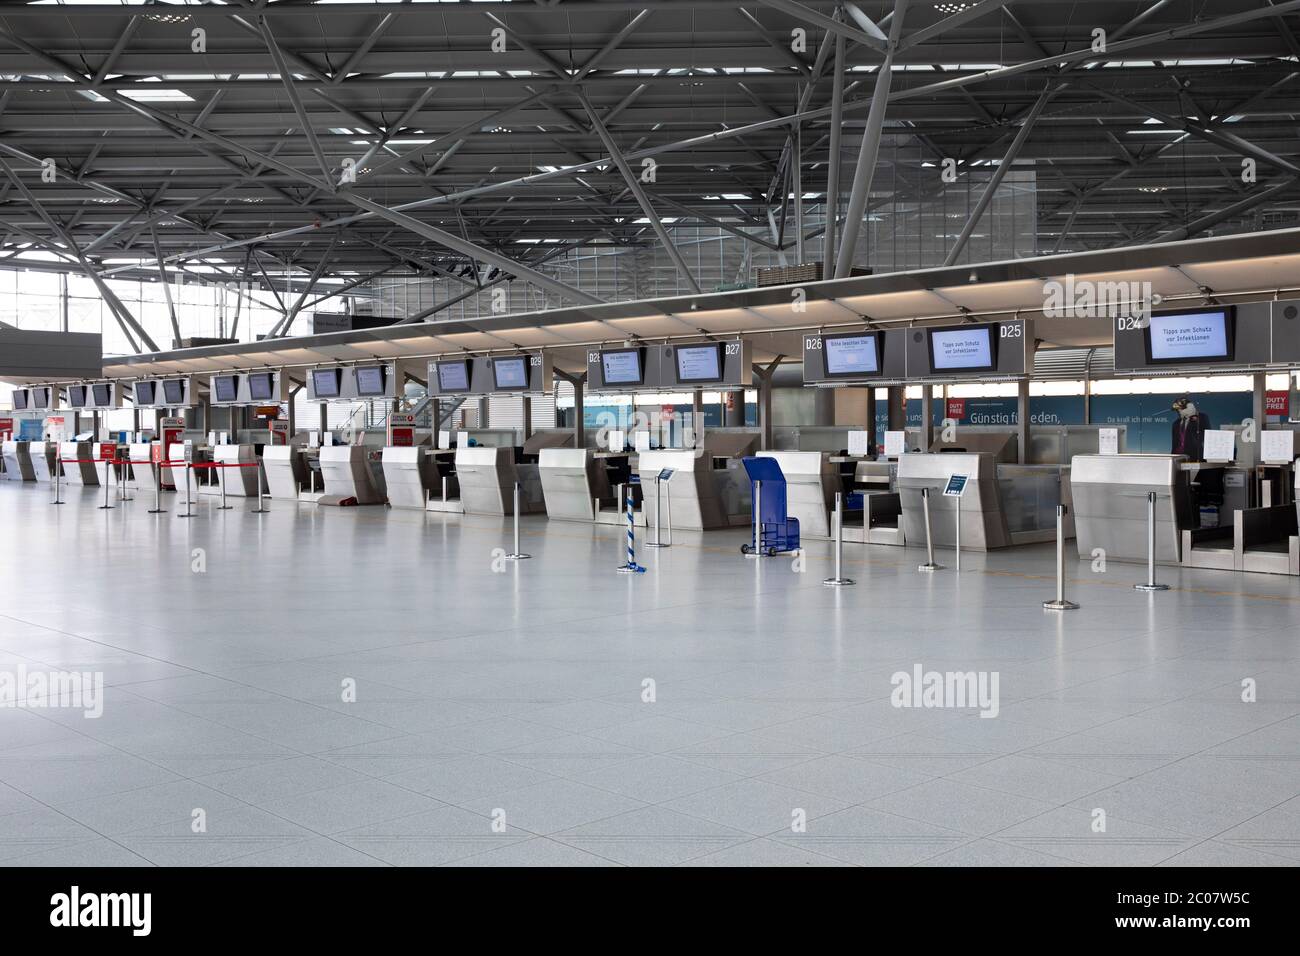 Auswirkung am Flughafen Köln/Bonn Passagierrückgang im Zusammenhang mit der weltweiten Ausbreitung des Coronavirus. Köln, 14.03.2020 Foto de stock